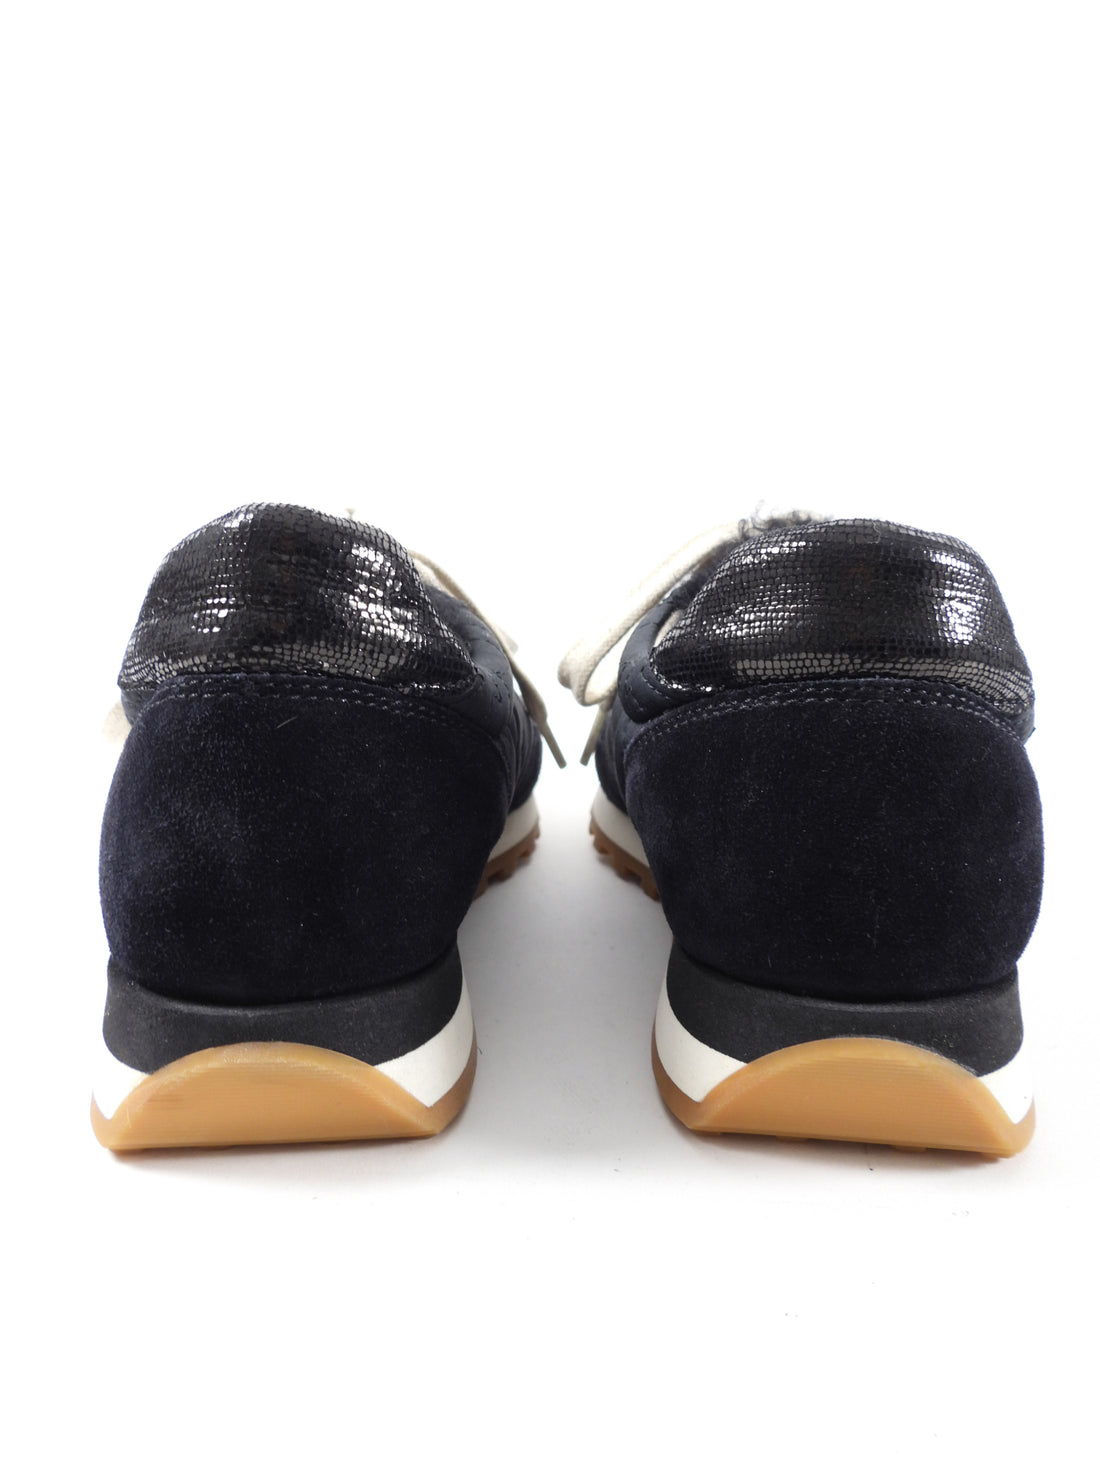 Brunello Cucinelli Black Shearling Monili Sneakers - 37